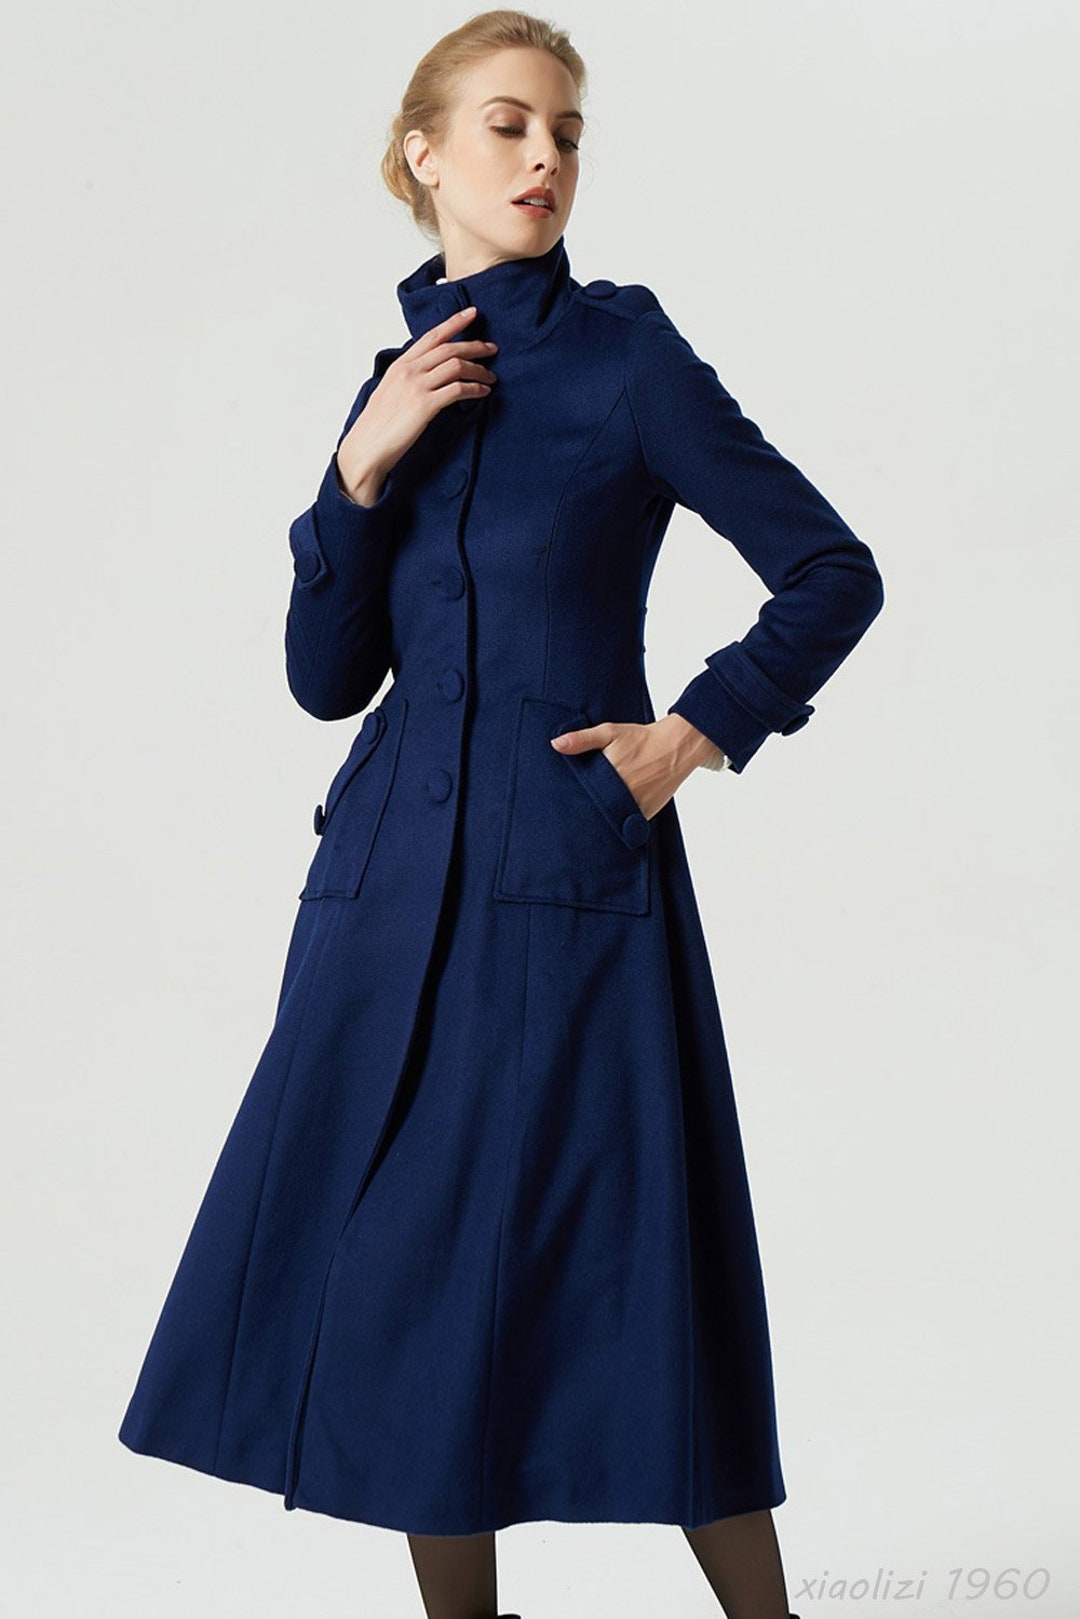 Blue Military Wool Coat Winter Coat Women Wool Coat Women - Etsy